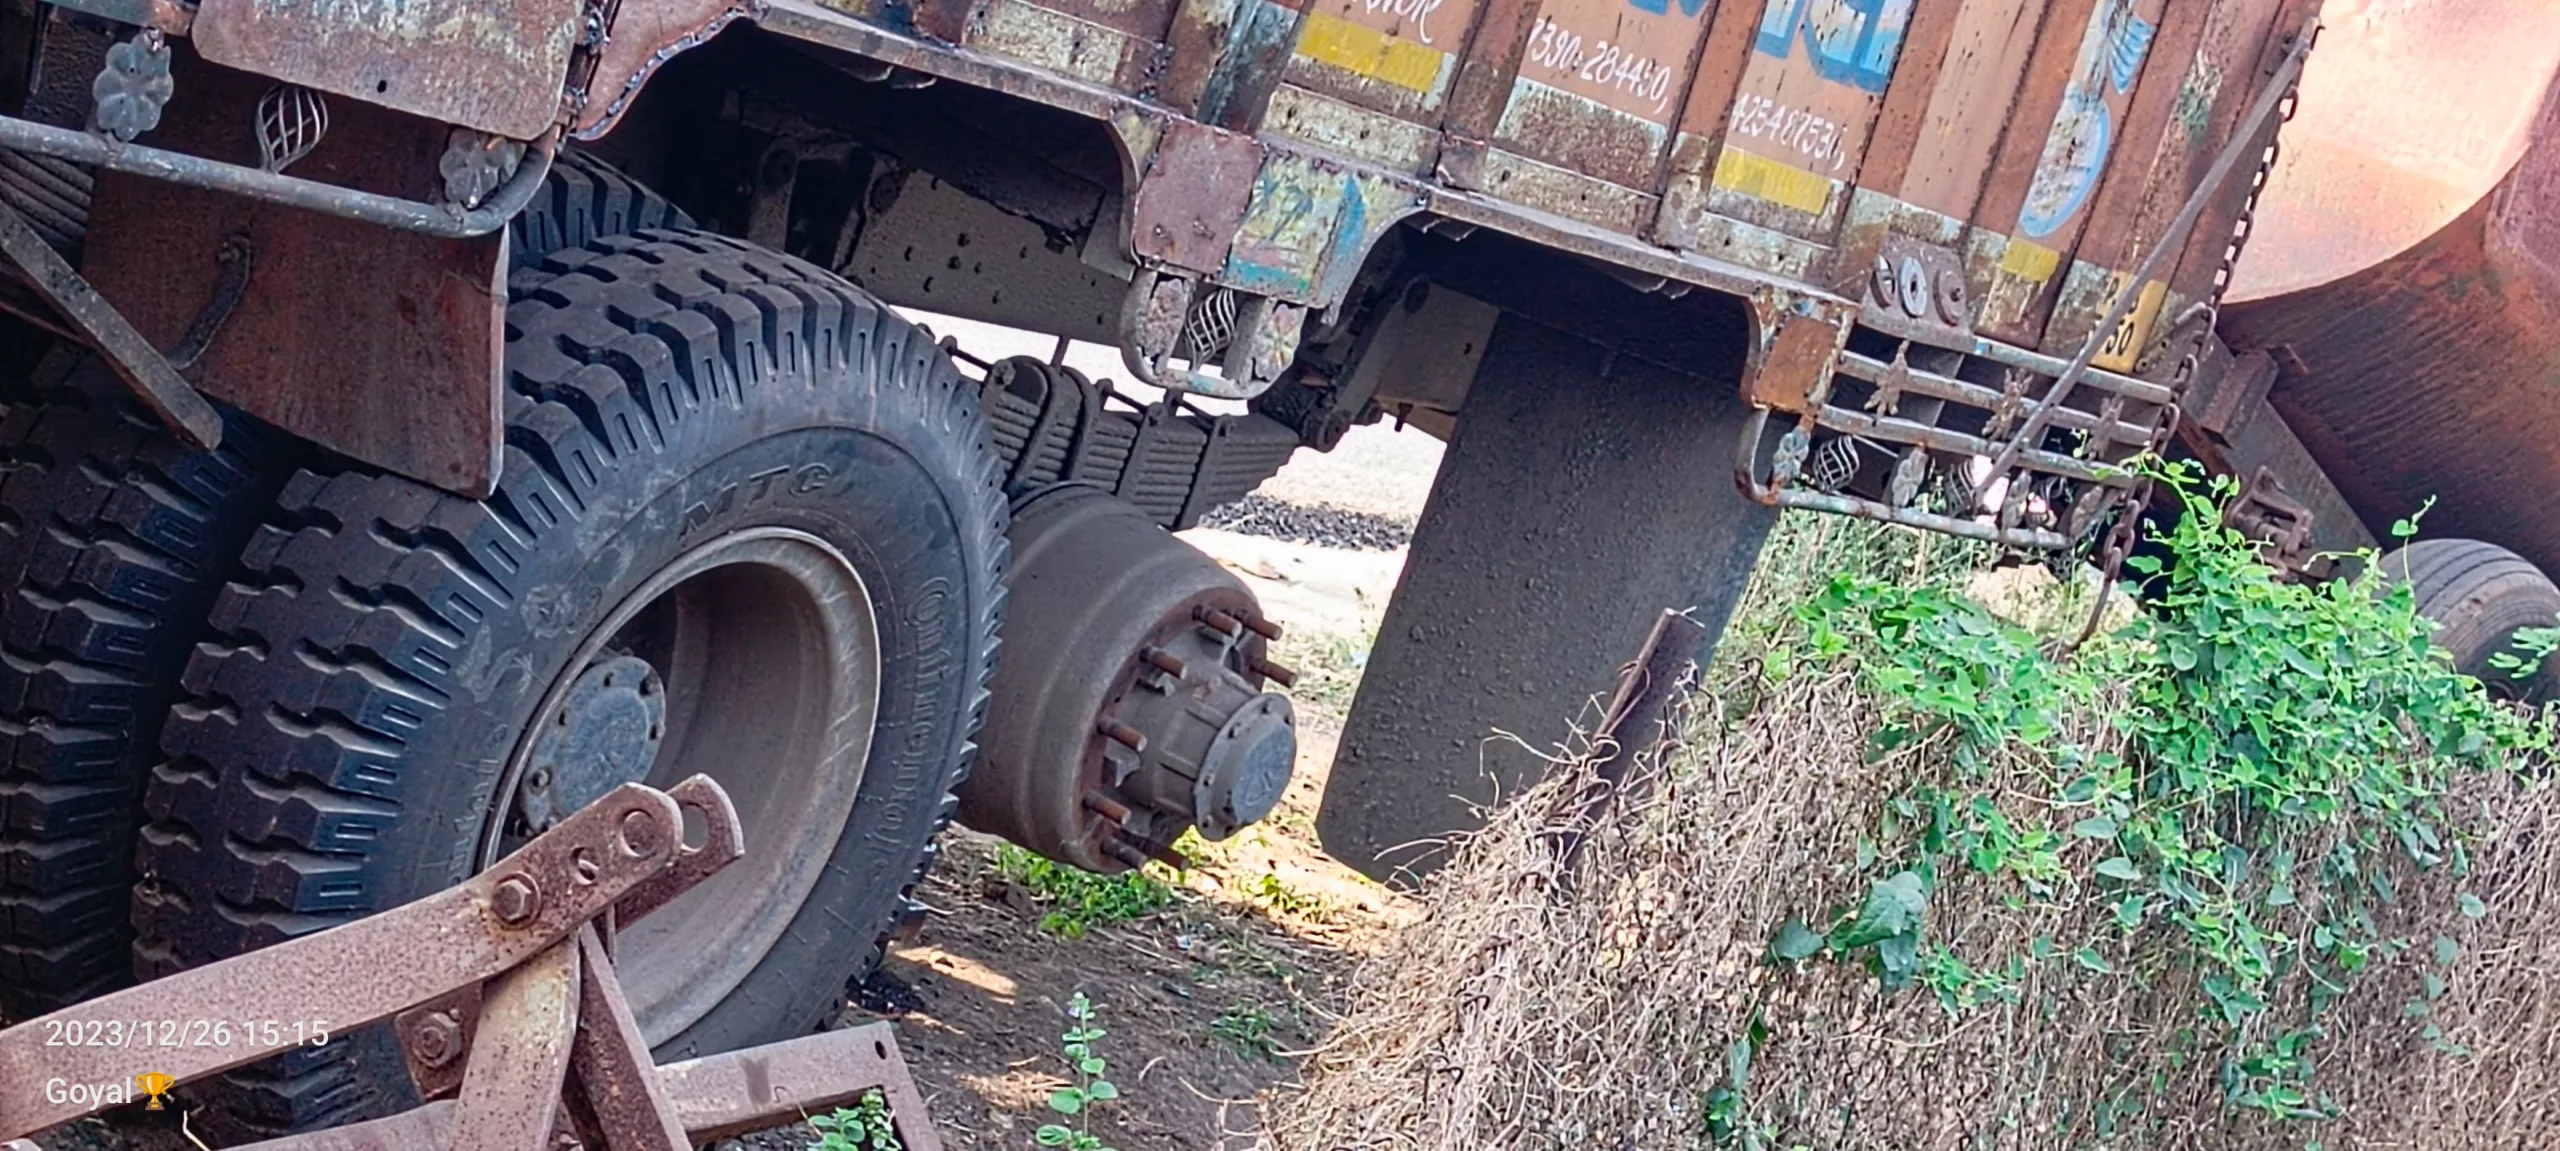 लोकप्रिय समाजसेवी सुरेश चंद जैन (पप्पू भैया) की ट्रक के टायर हुए चोरी | New India Times